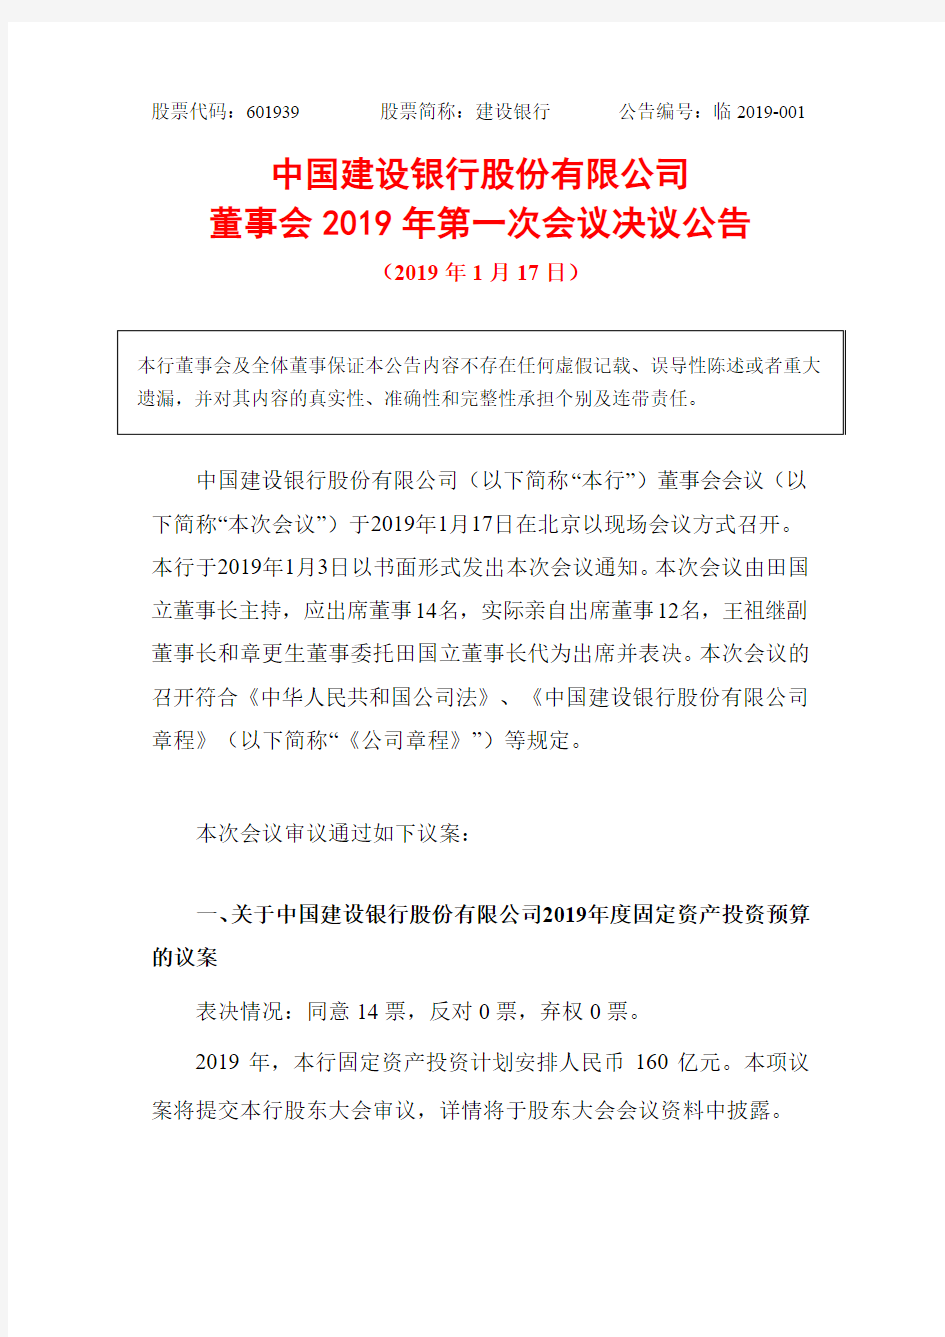 中国建设银行股份有限公司董事会2019年第一次会议决议公告